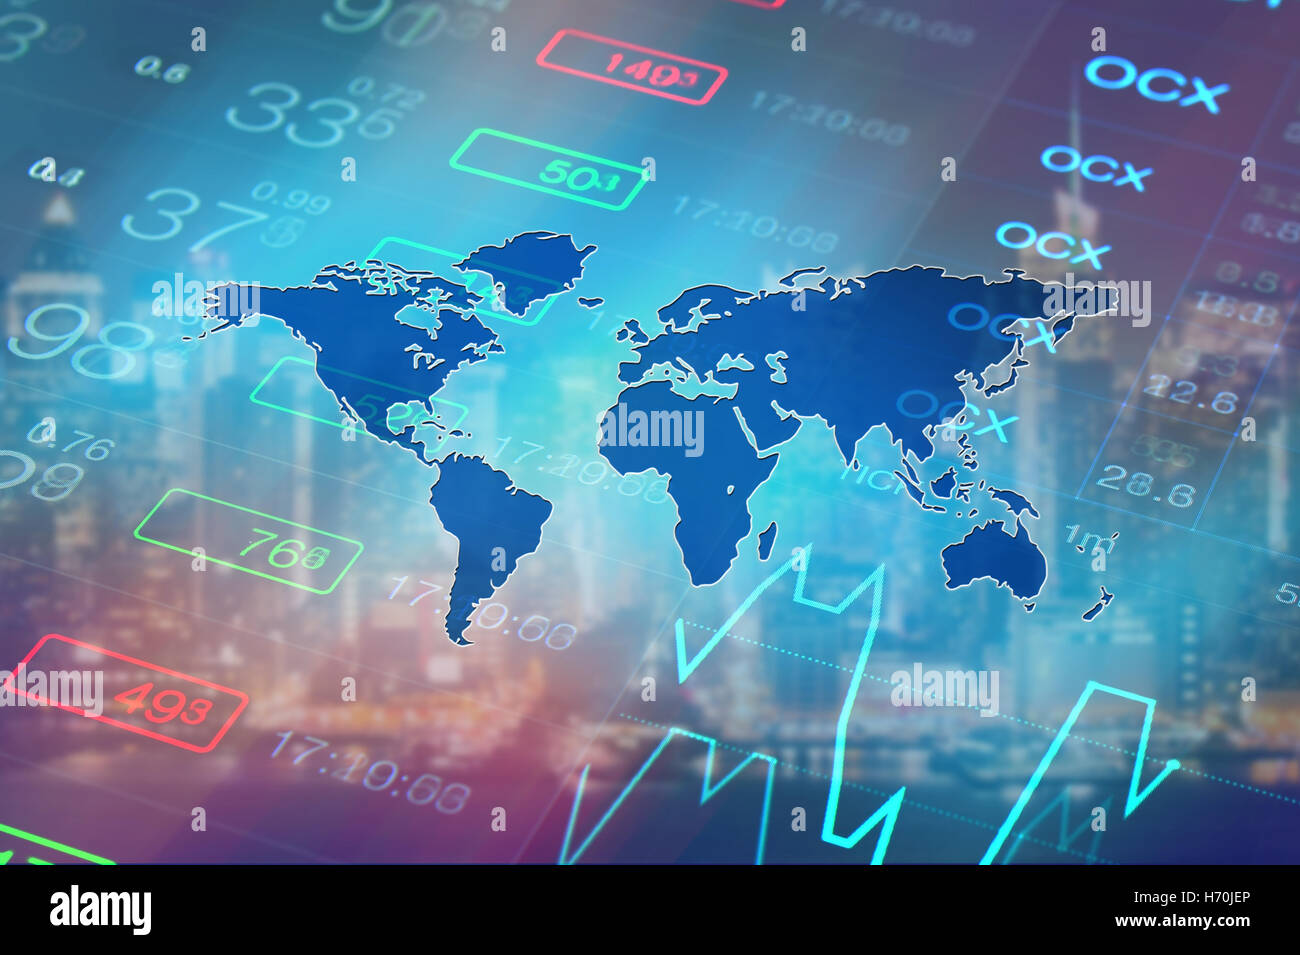 Globale Wirtschaft, Finanzen, Börse, Global Business Konzept Hintergrund. Börse Daten und Diagramm am Hintergrund der Weltkarte. Stockfoto